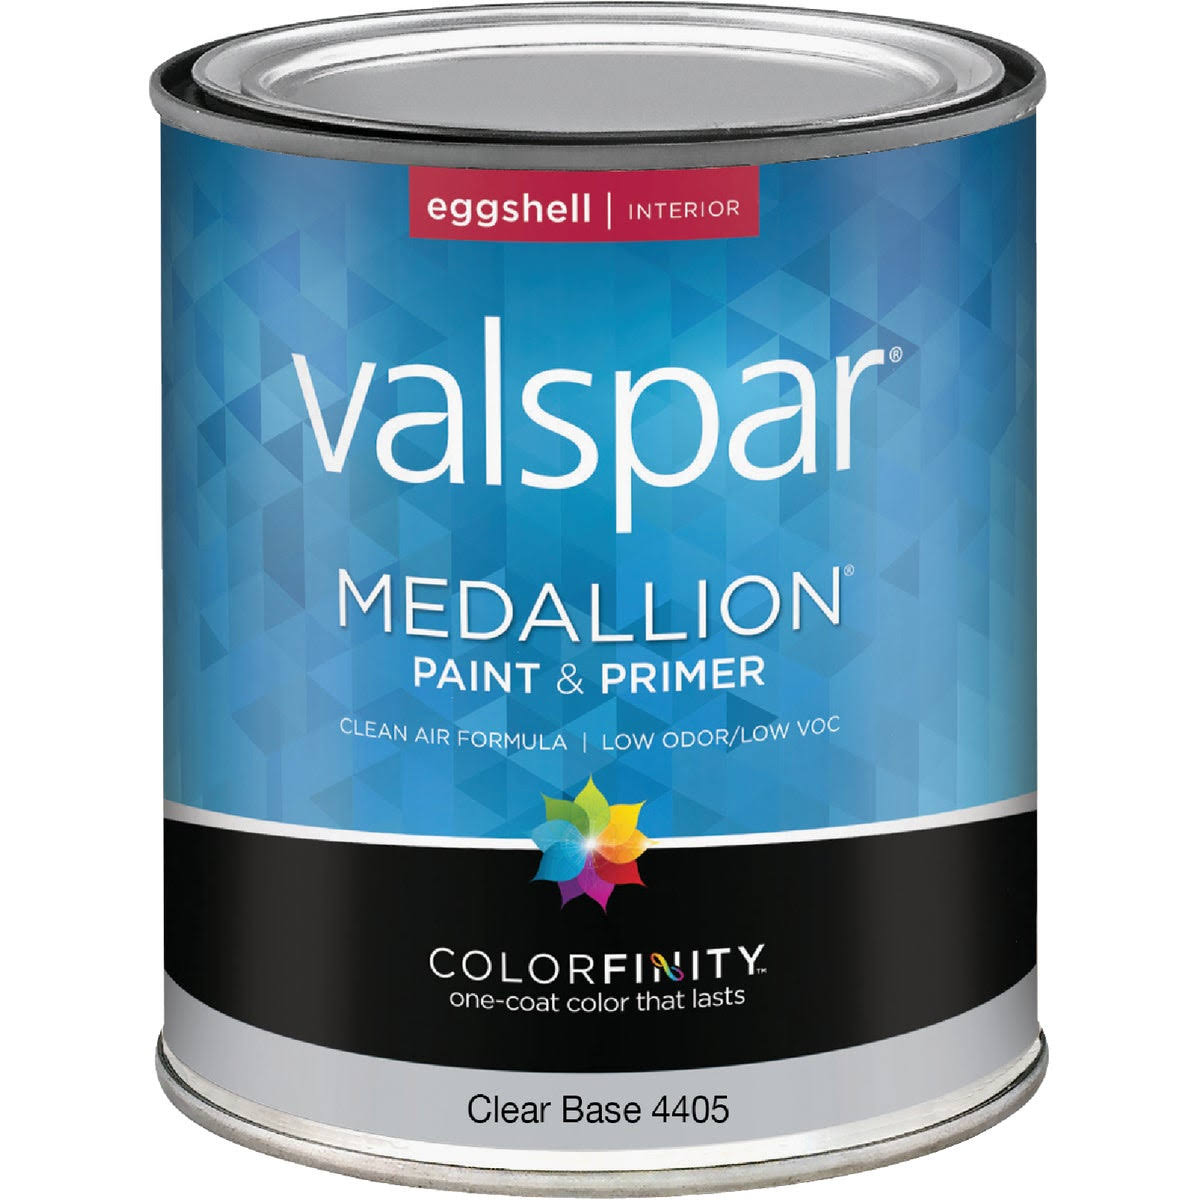 Valspar Medallion Interior 100% Acrylic Eggshell Paint